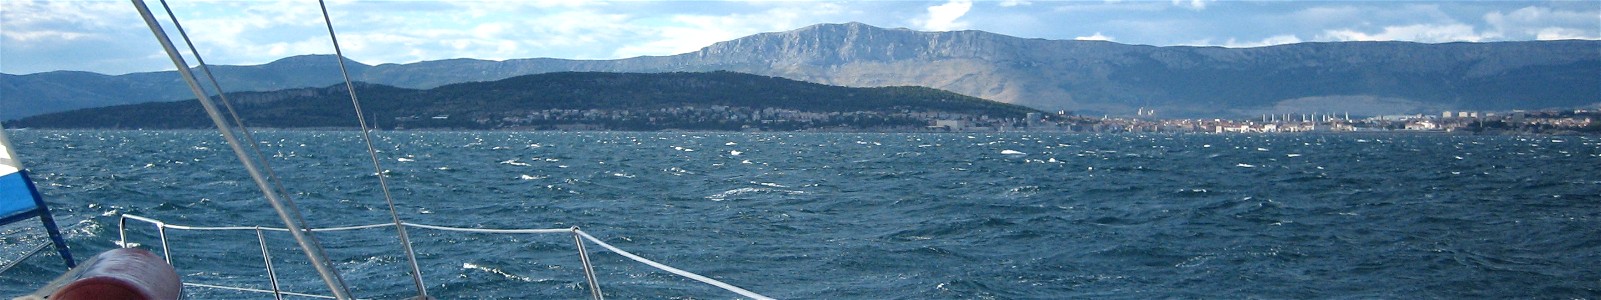 skippertraining motoryacht kroatien